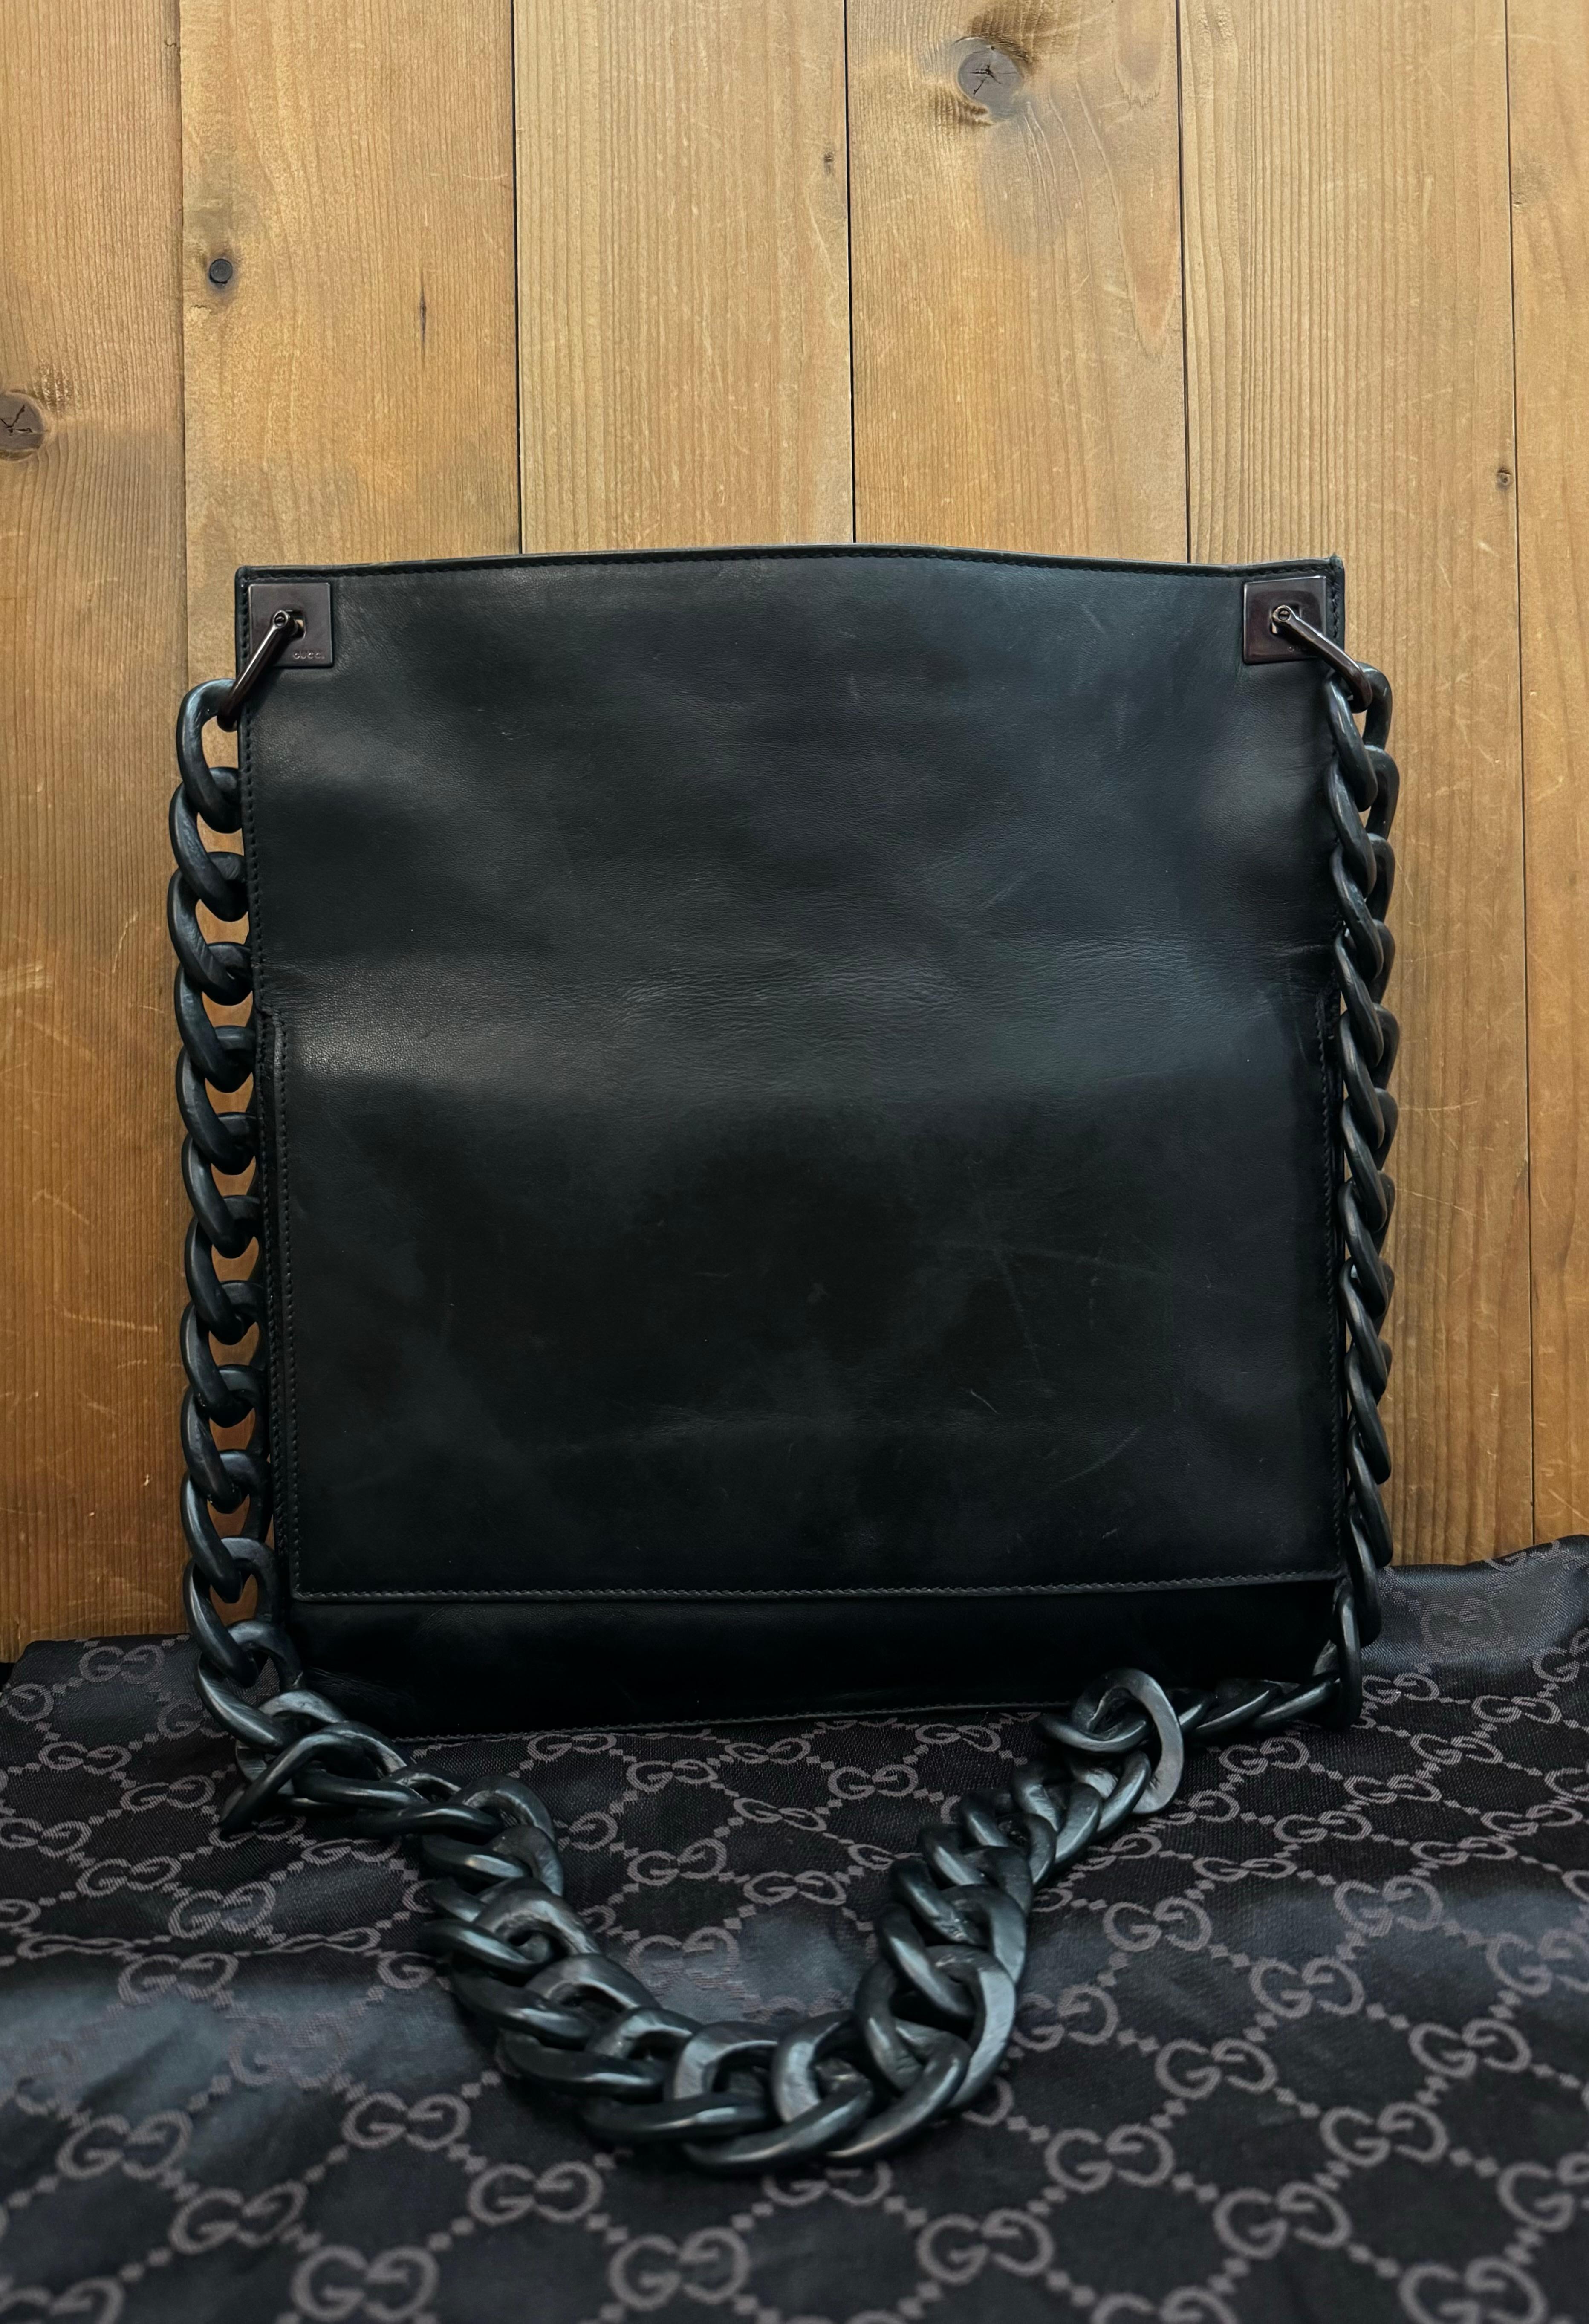 Diese flache Vintage-Messenger-Tasche von Gucci ist aus schwarzem, glattem Kalbsleder gefertigt und mit einer Holzkette versehen. Der Deckel öffnet sich zum Hauptfach, das mit Veloursleder gefüttert ist und eine aufgesetzte Tasche enthält. Auf der